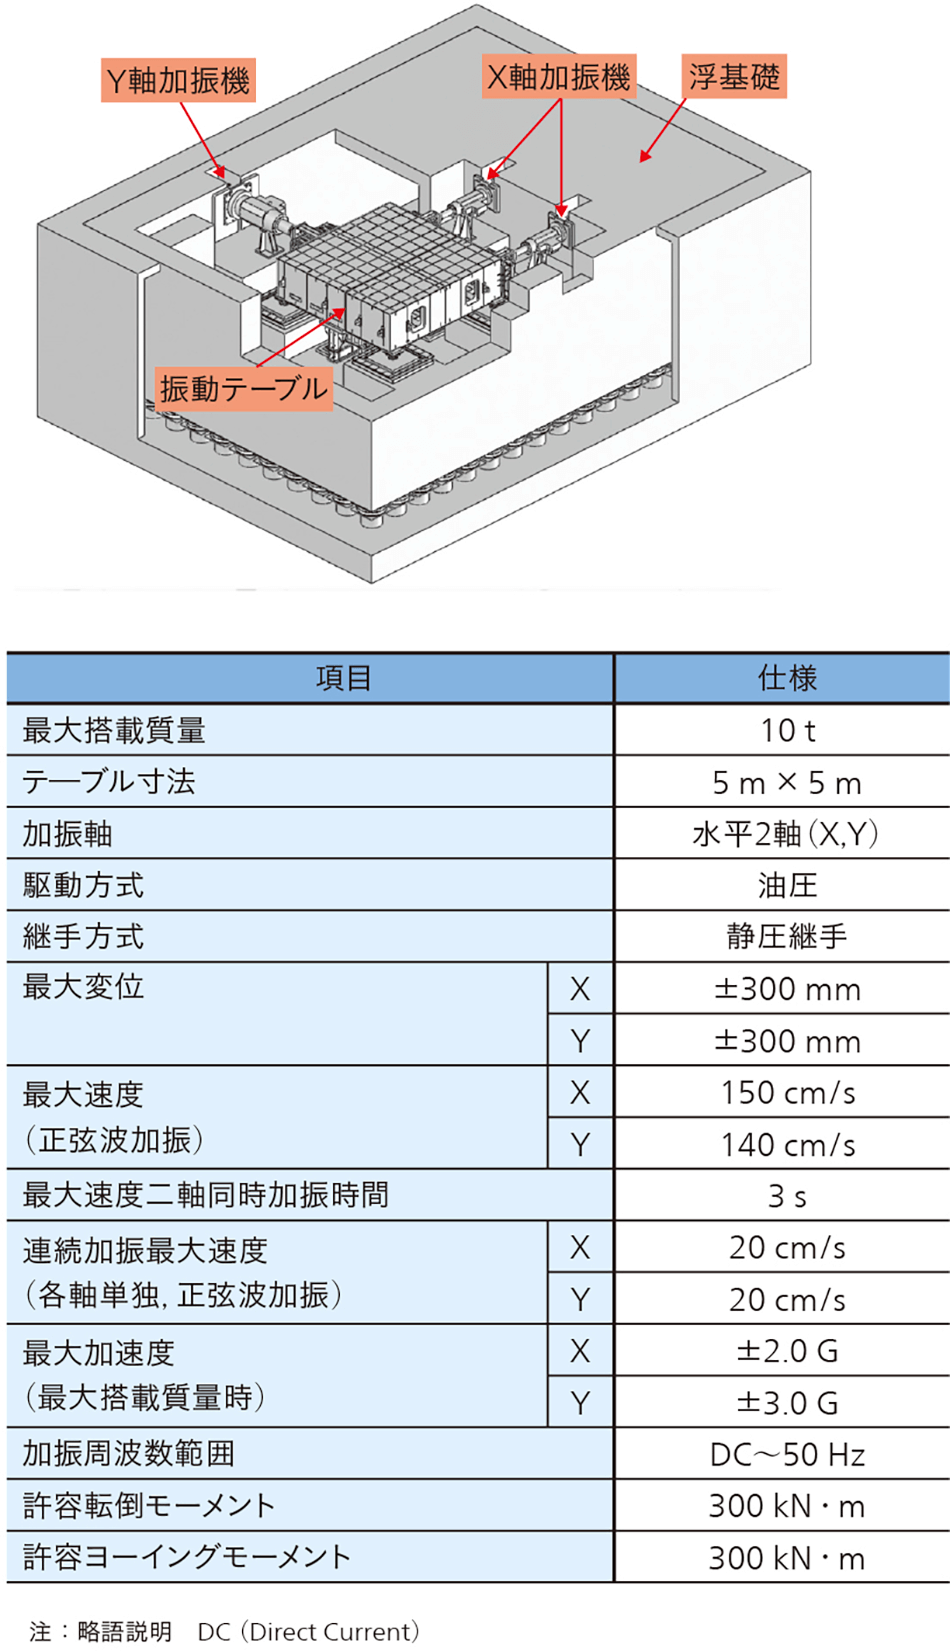 東京大学向け水平二次元振動台の概略図（上），仕様（下）